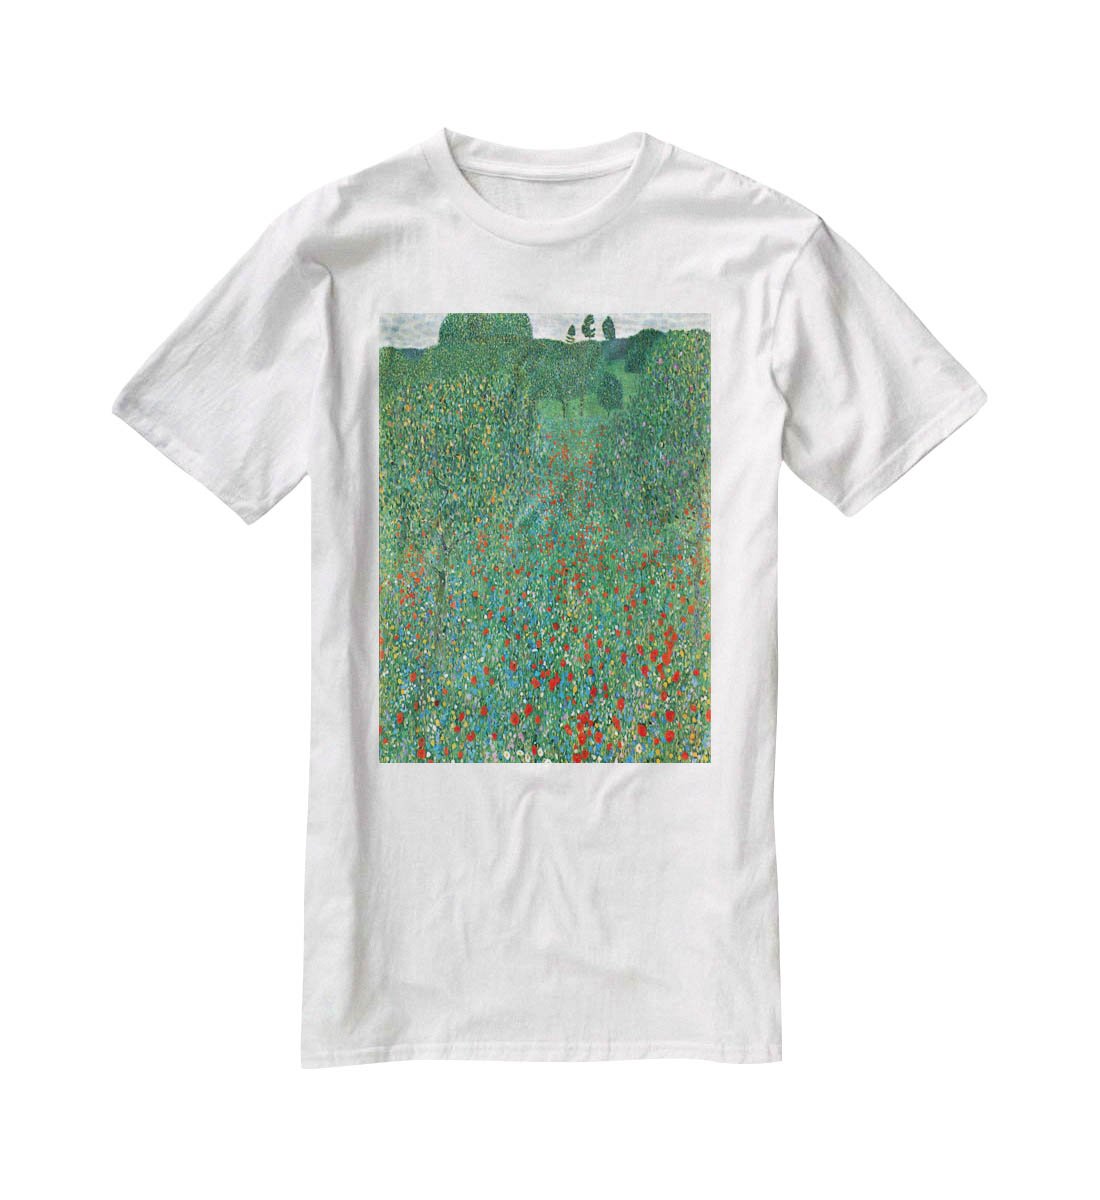 Poppy Field by Klimt T-Shirt - Canvas Art Rocks - 5